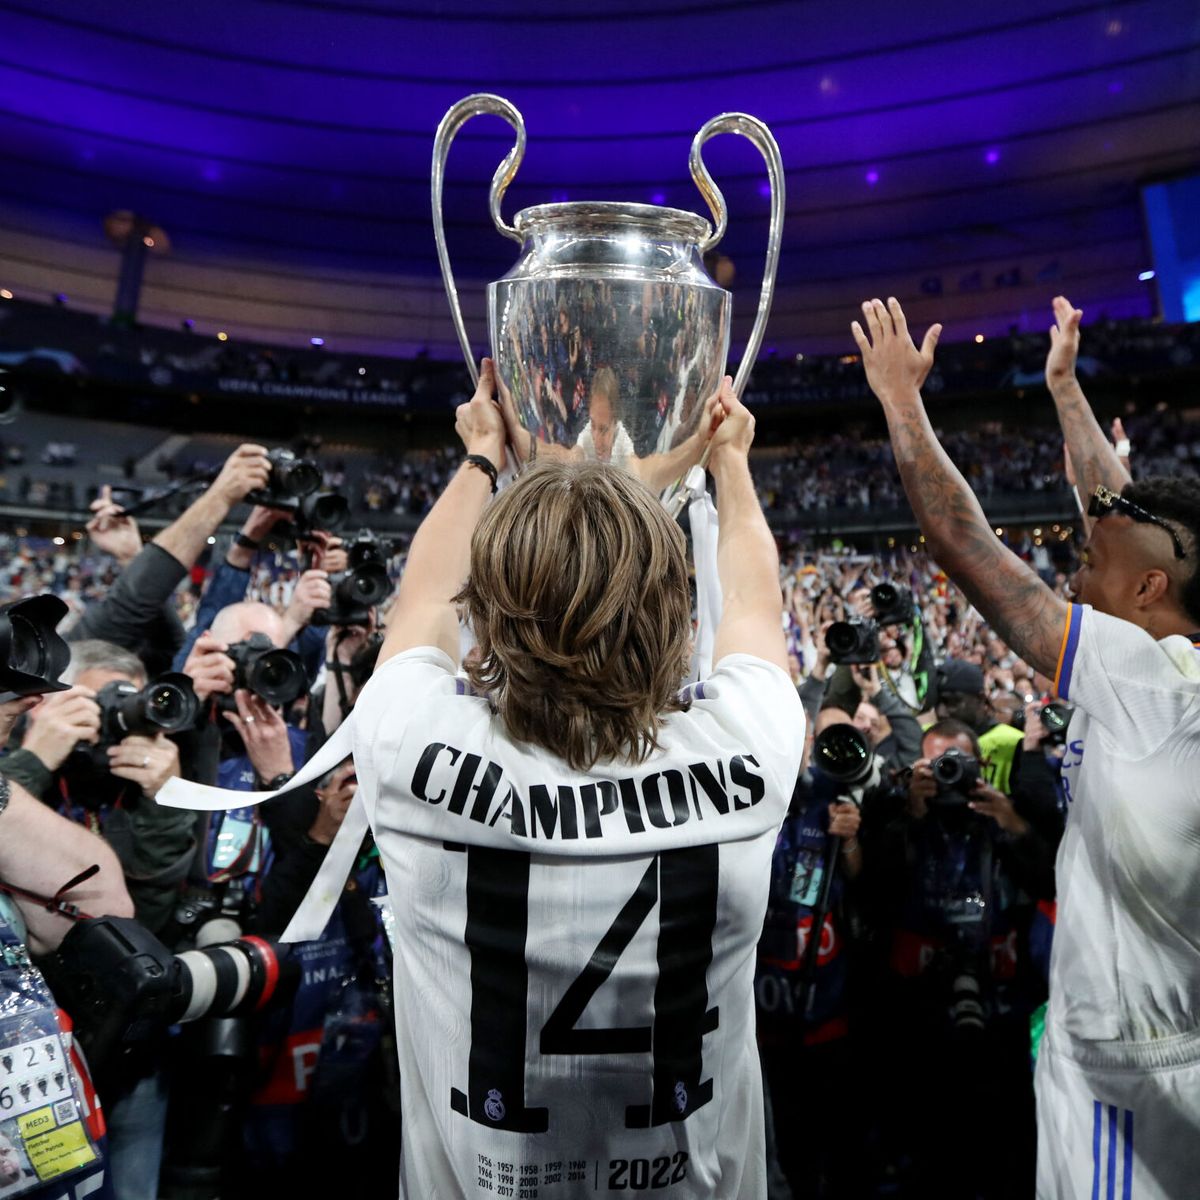 El Madrid cierra una noche mágica en el Bernabéu: los jugadores, aclamados  como héroes